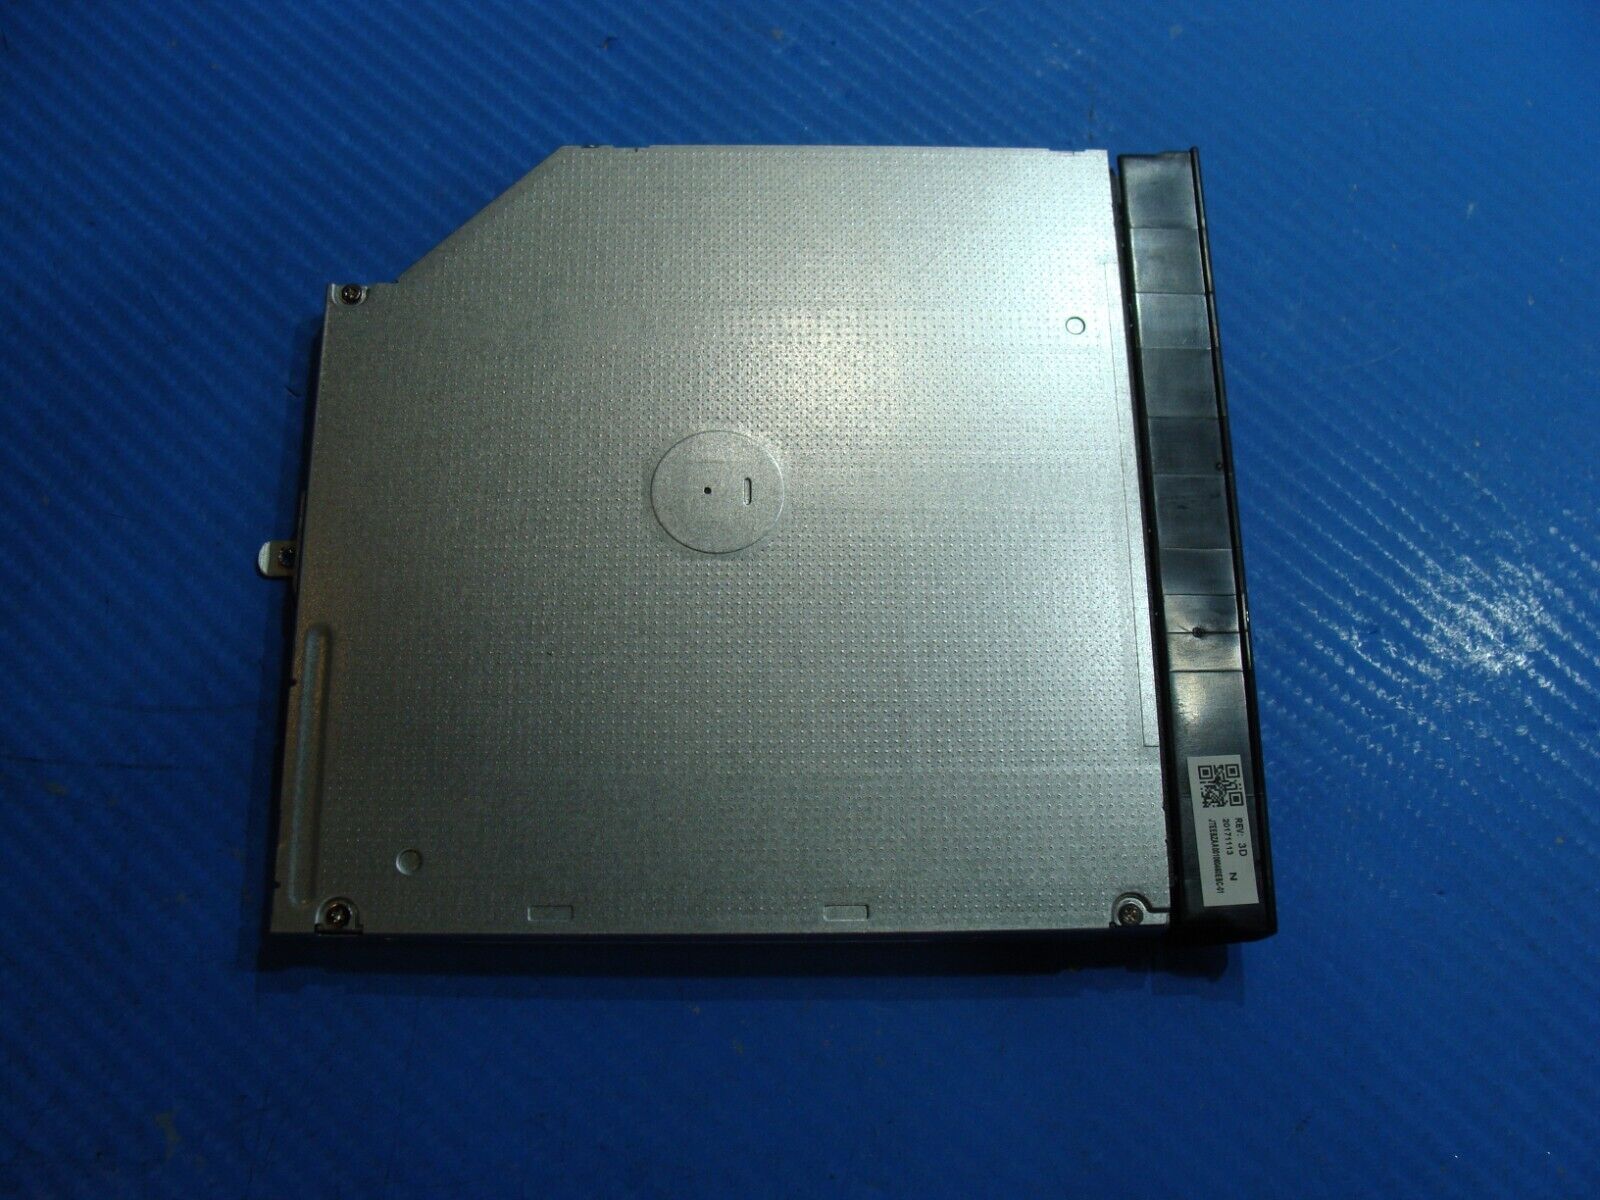 Acer Aspire E5-575-33BM 15.6